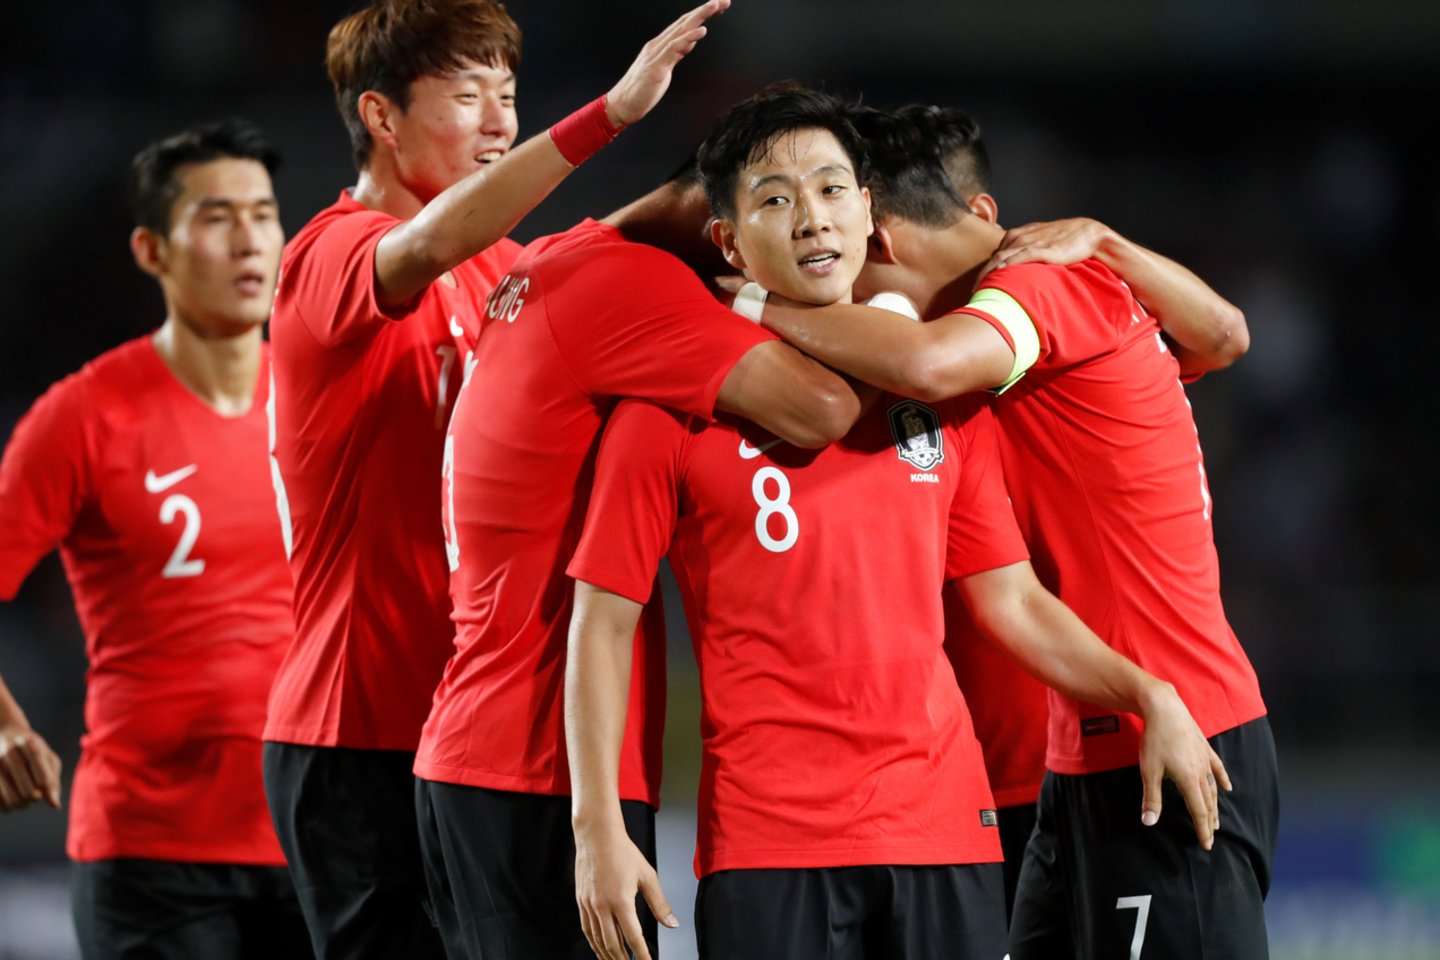  Pietų Korėjos futbolo rinktinė džiaugiasi pergale.<br> Reuters/Scanpix nuotr.